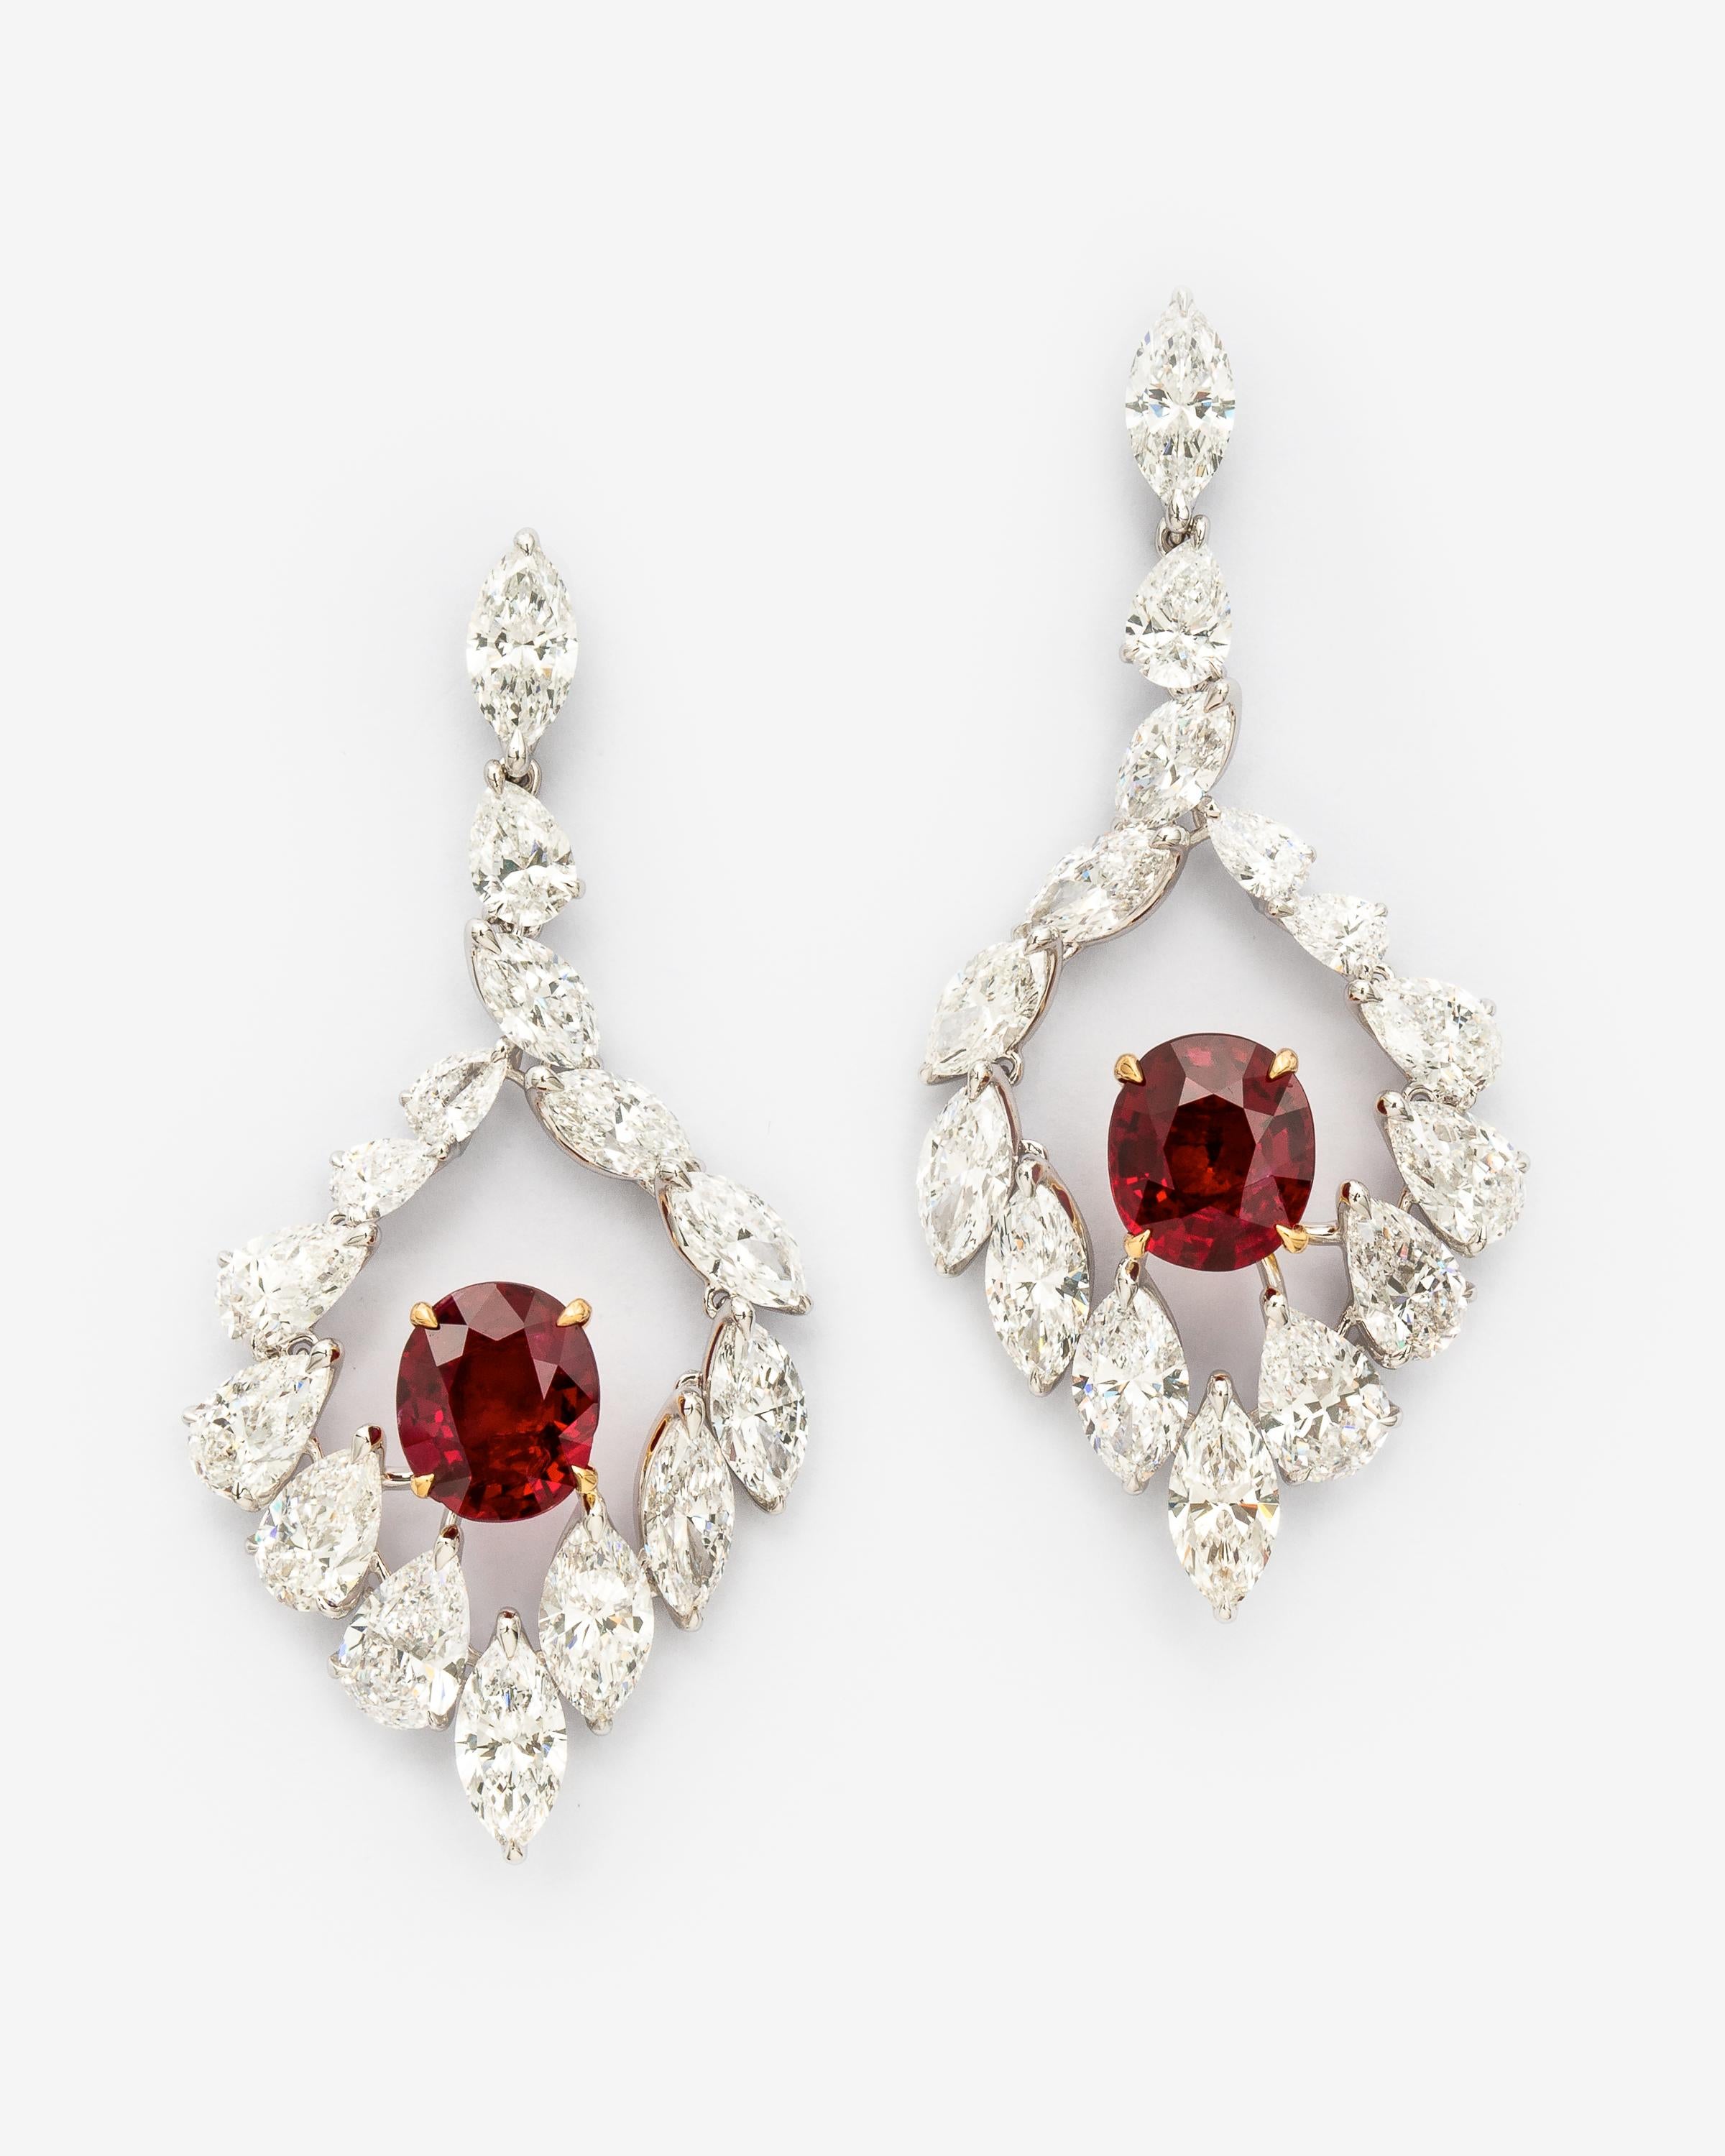 Sensationelle Diamantohrringe mit einem passenden Paar No-Heat-Burma-Blutrubin-Ohrringe - ein 2,358-Karat- und ein 2,704-Karat-Rubin im Ovalschliff, zertifiziert mit SSEF (Report #100915). Beide Rubine sind in 18K Gelbgold gefasst. Die Rubine sind